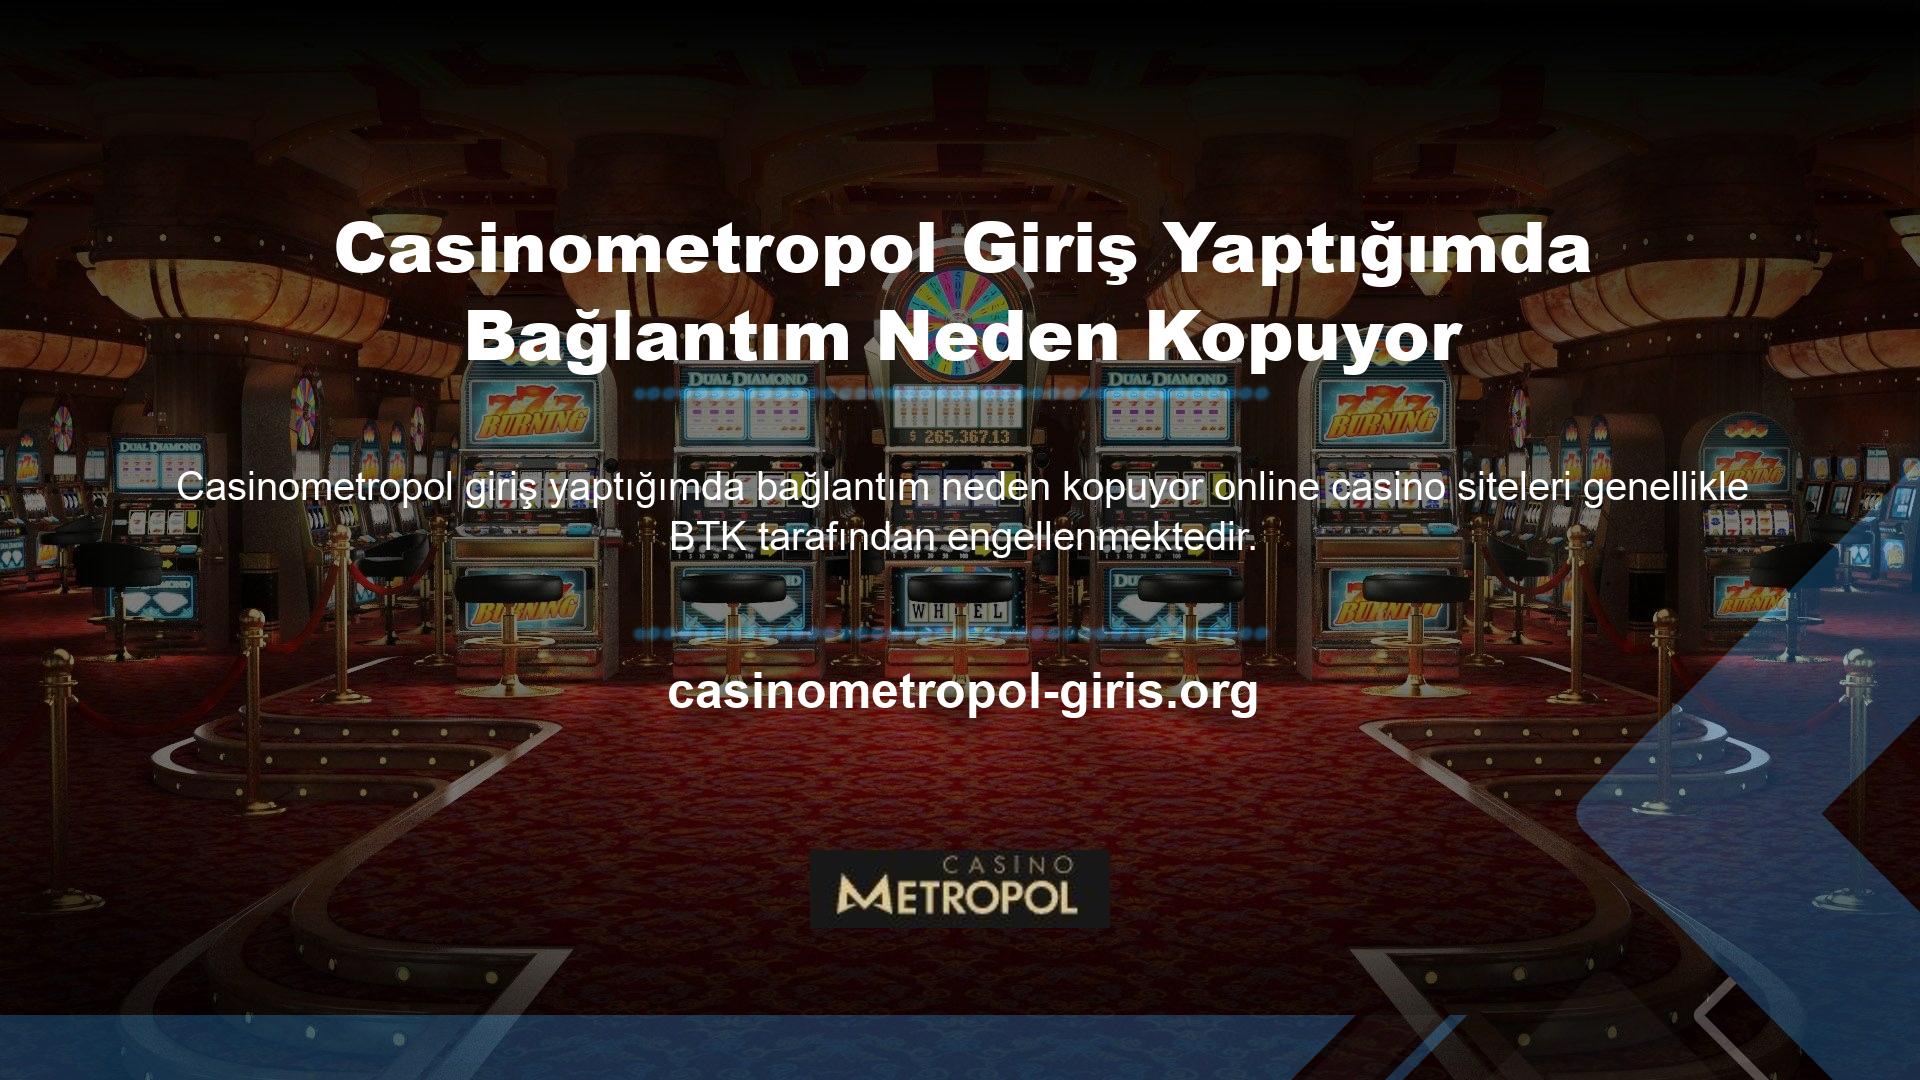 Bu engelleme sorunlarını yaşayan sitelerden biri de Casinometropol